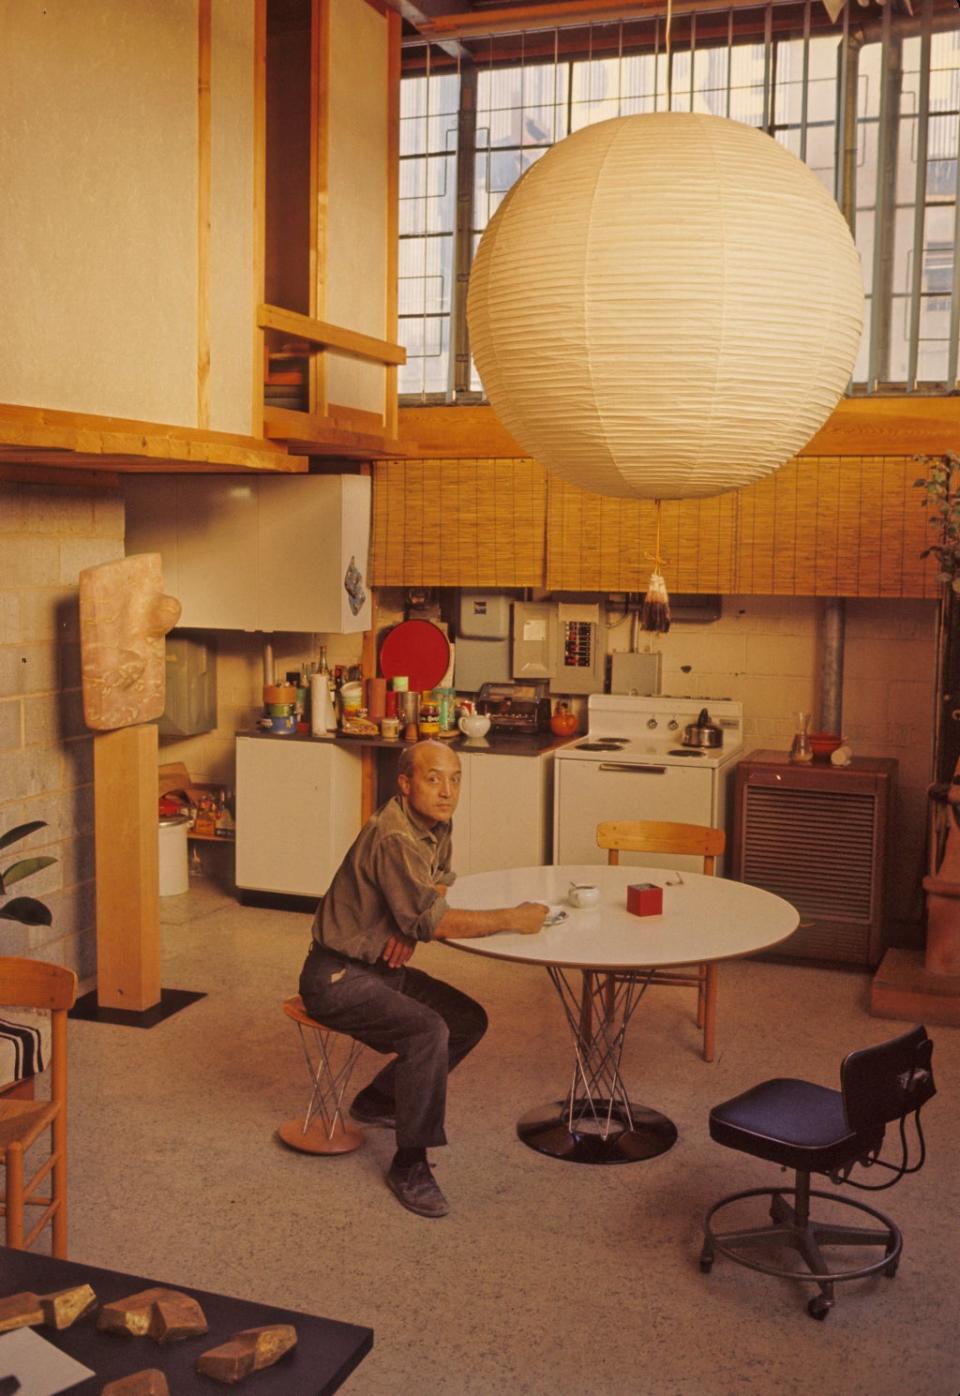 Noguchi in his Queens Studio, New York, 1964 (Dan Budnik)